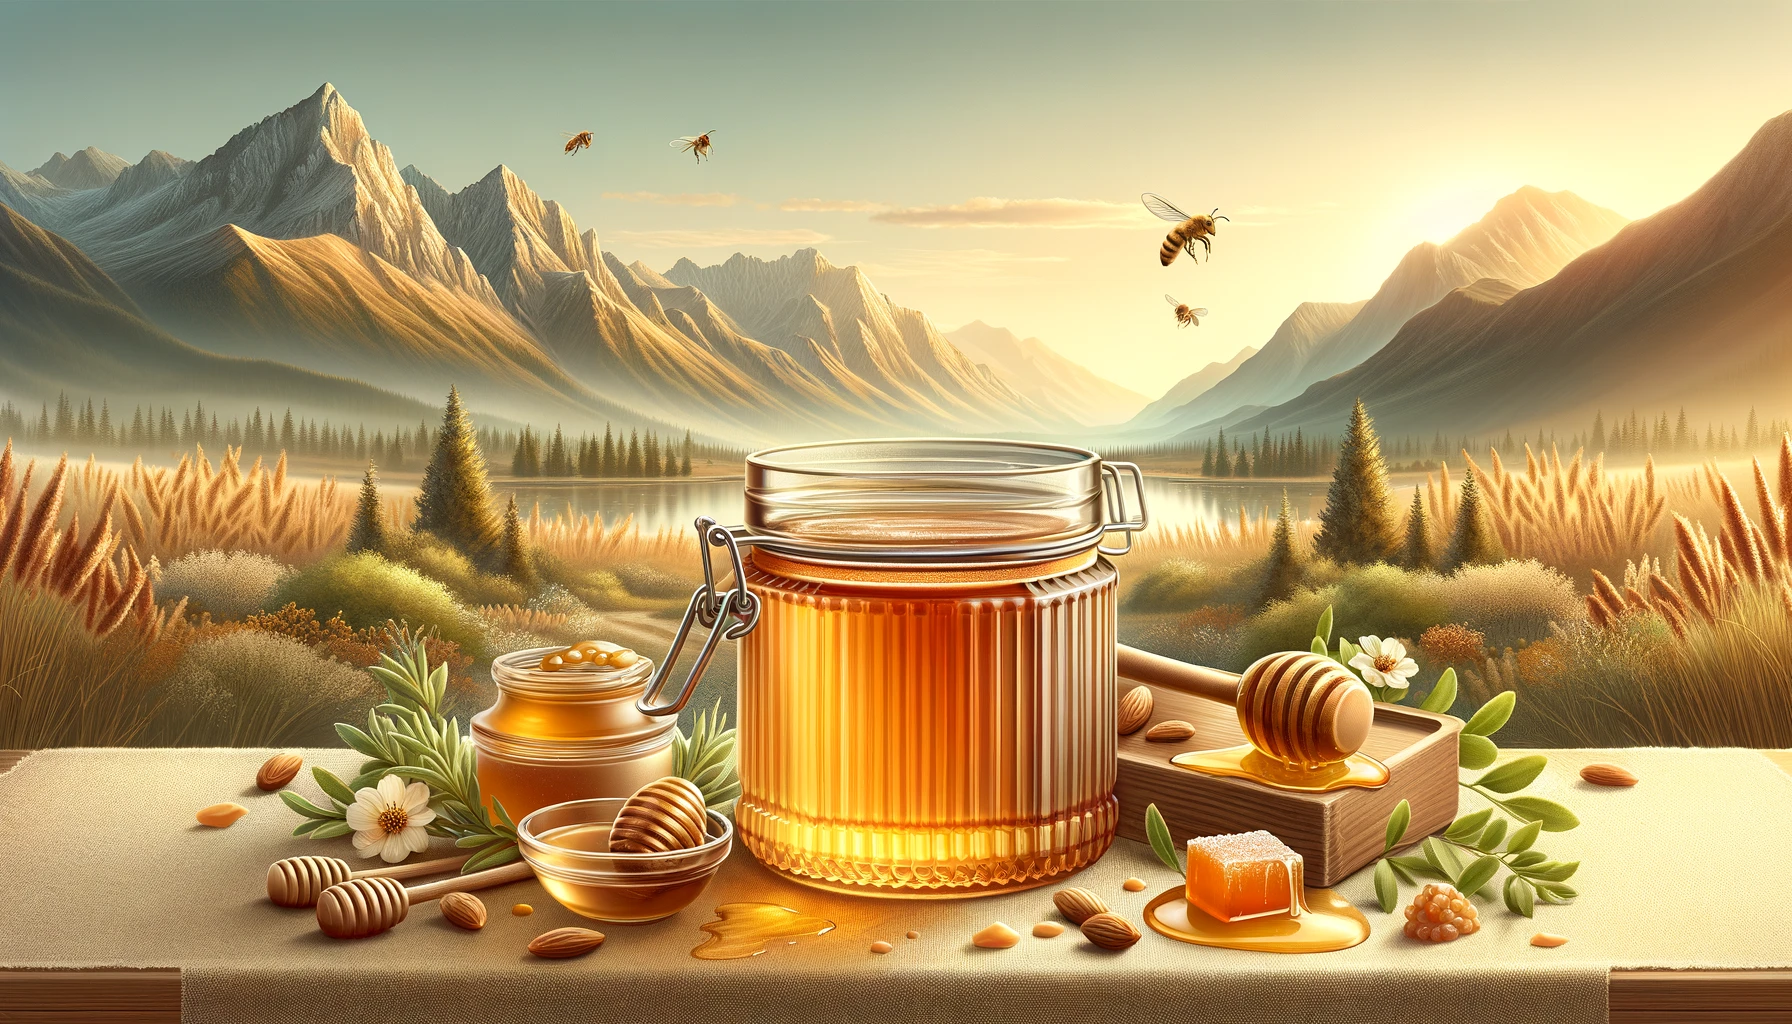 العسل الجبلي: مواصفاته وطرق استخدامه